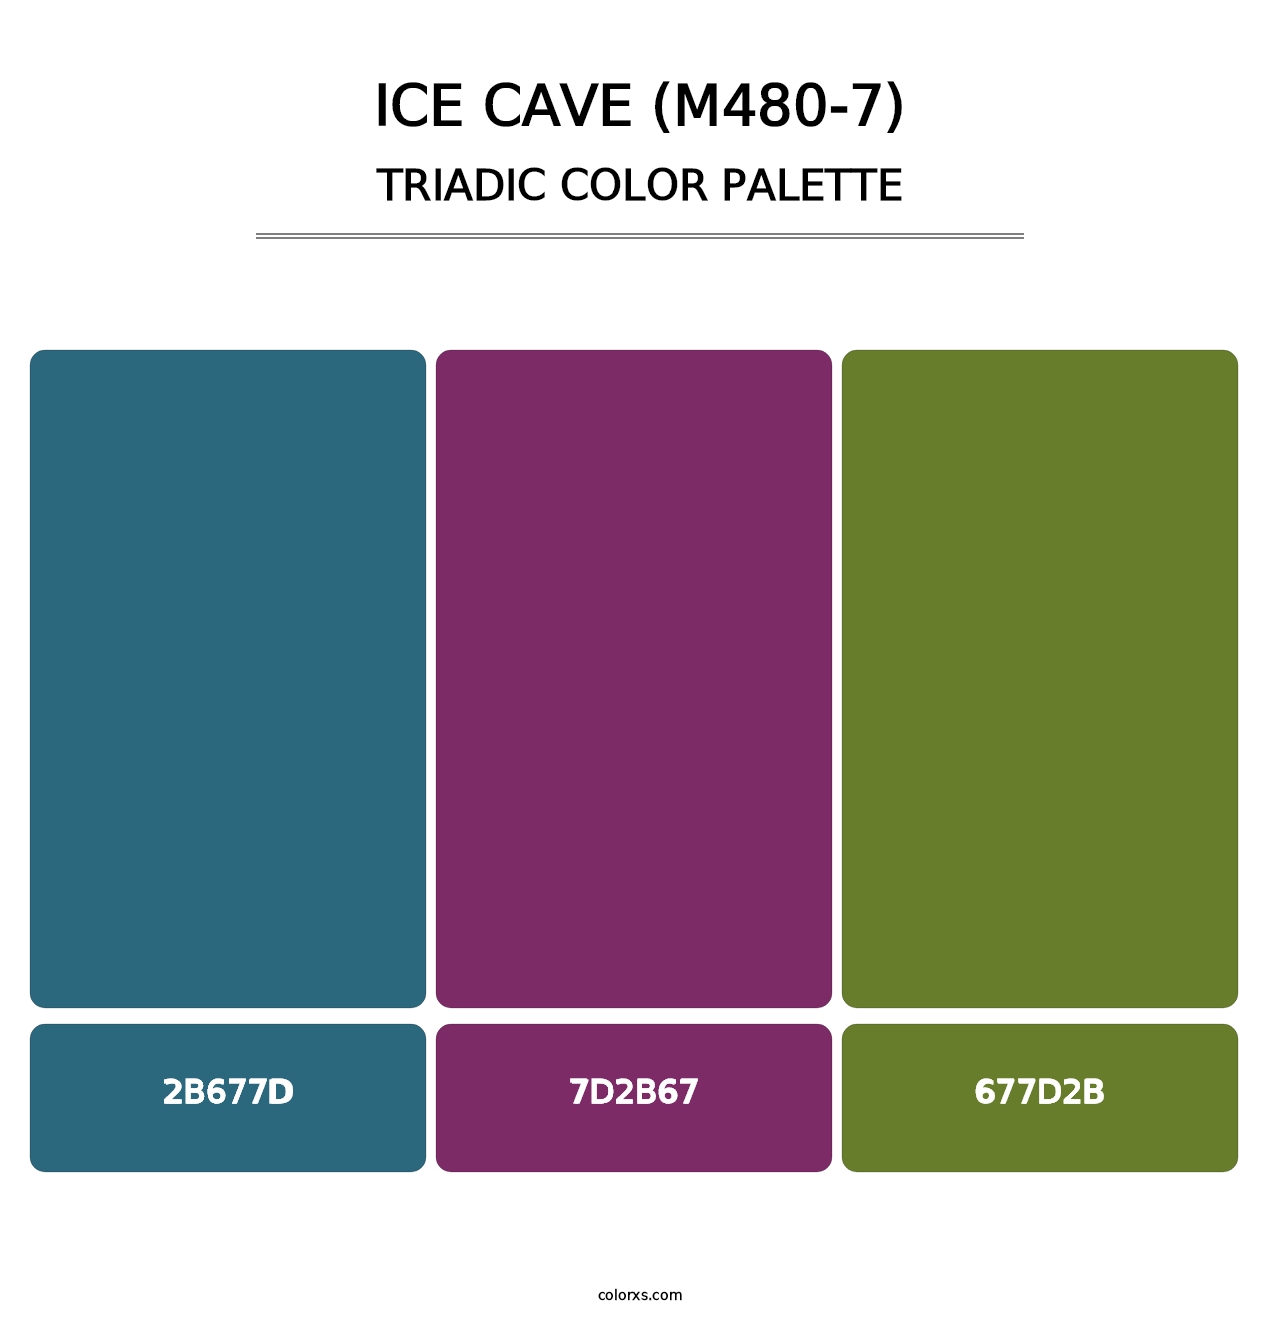 Ice Cave (M480-7) - Triadic Color Palette